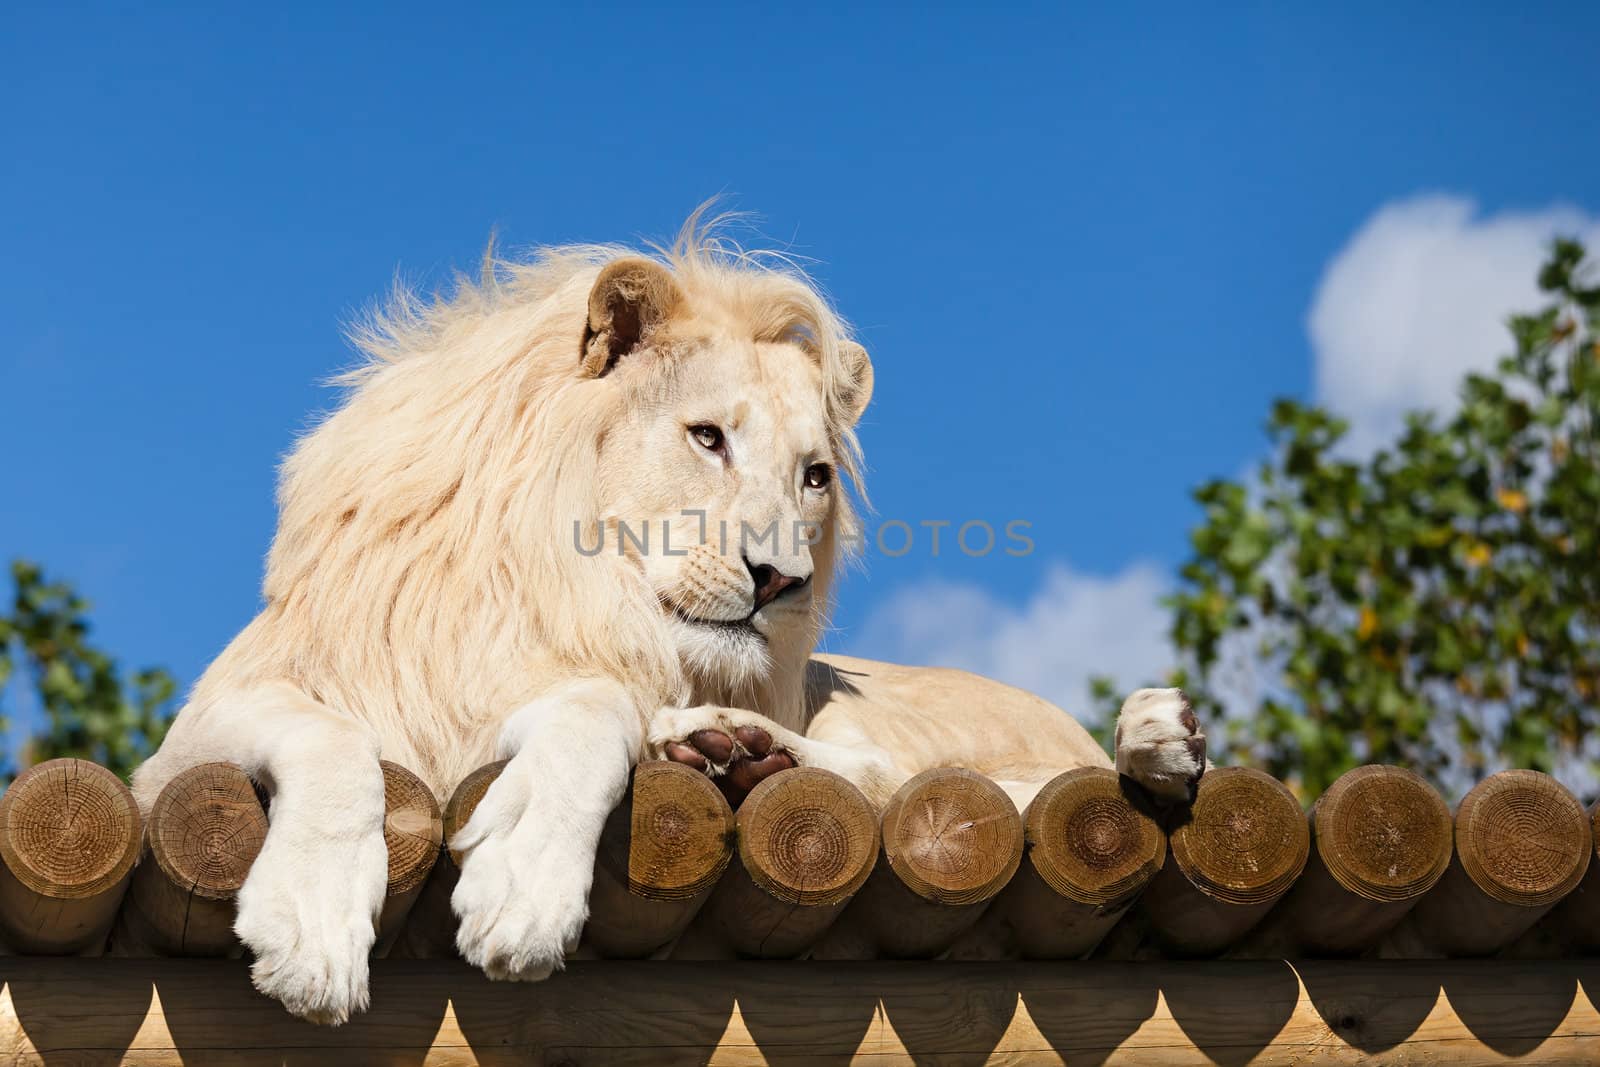 White Lion on Wooden Platform in the Sunshine by scheriton